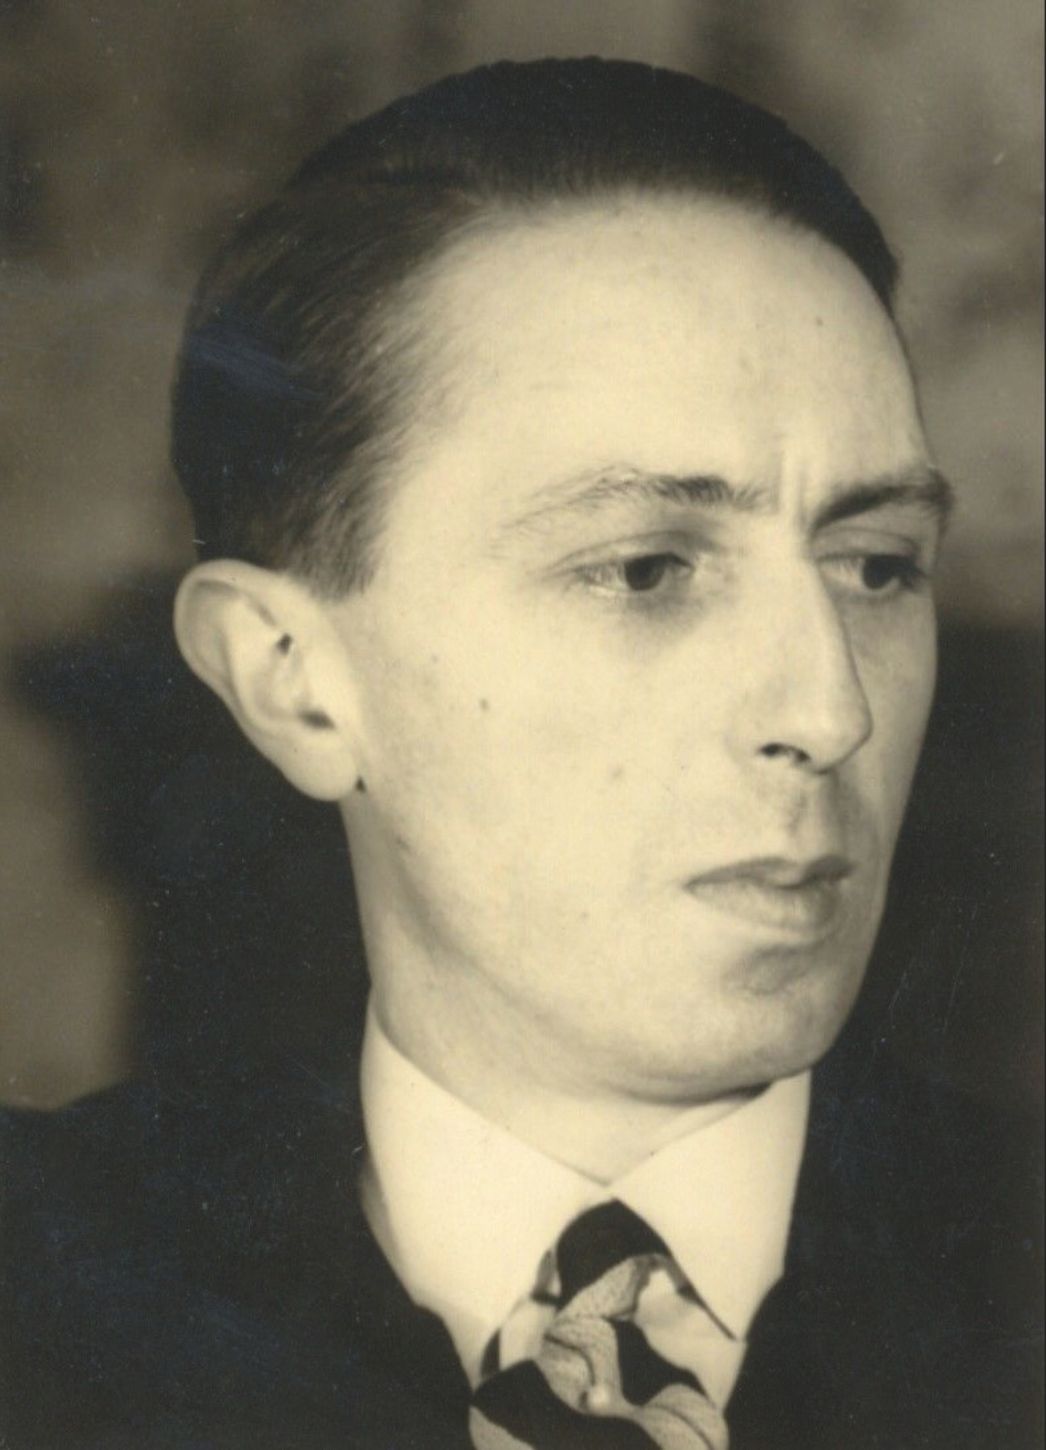 Schwarz-Weiß-Porträt von Roger Fagot vor seiner Verhaftung 1944